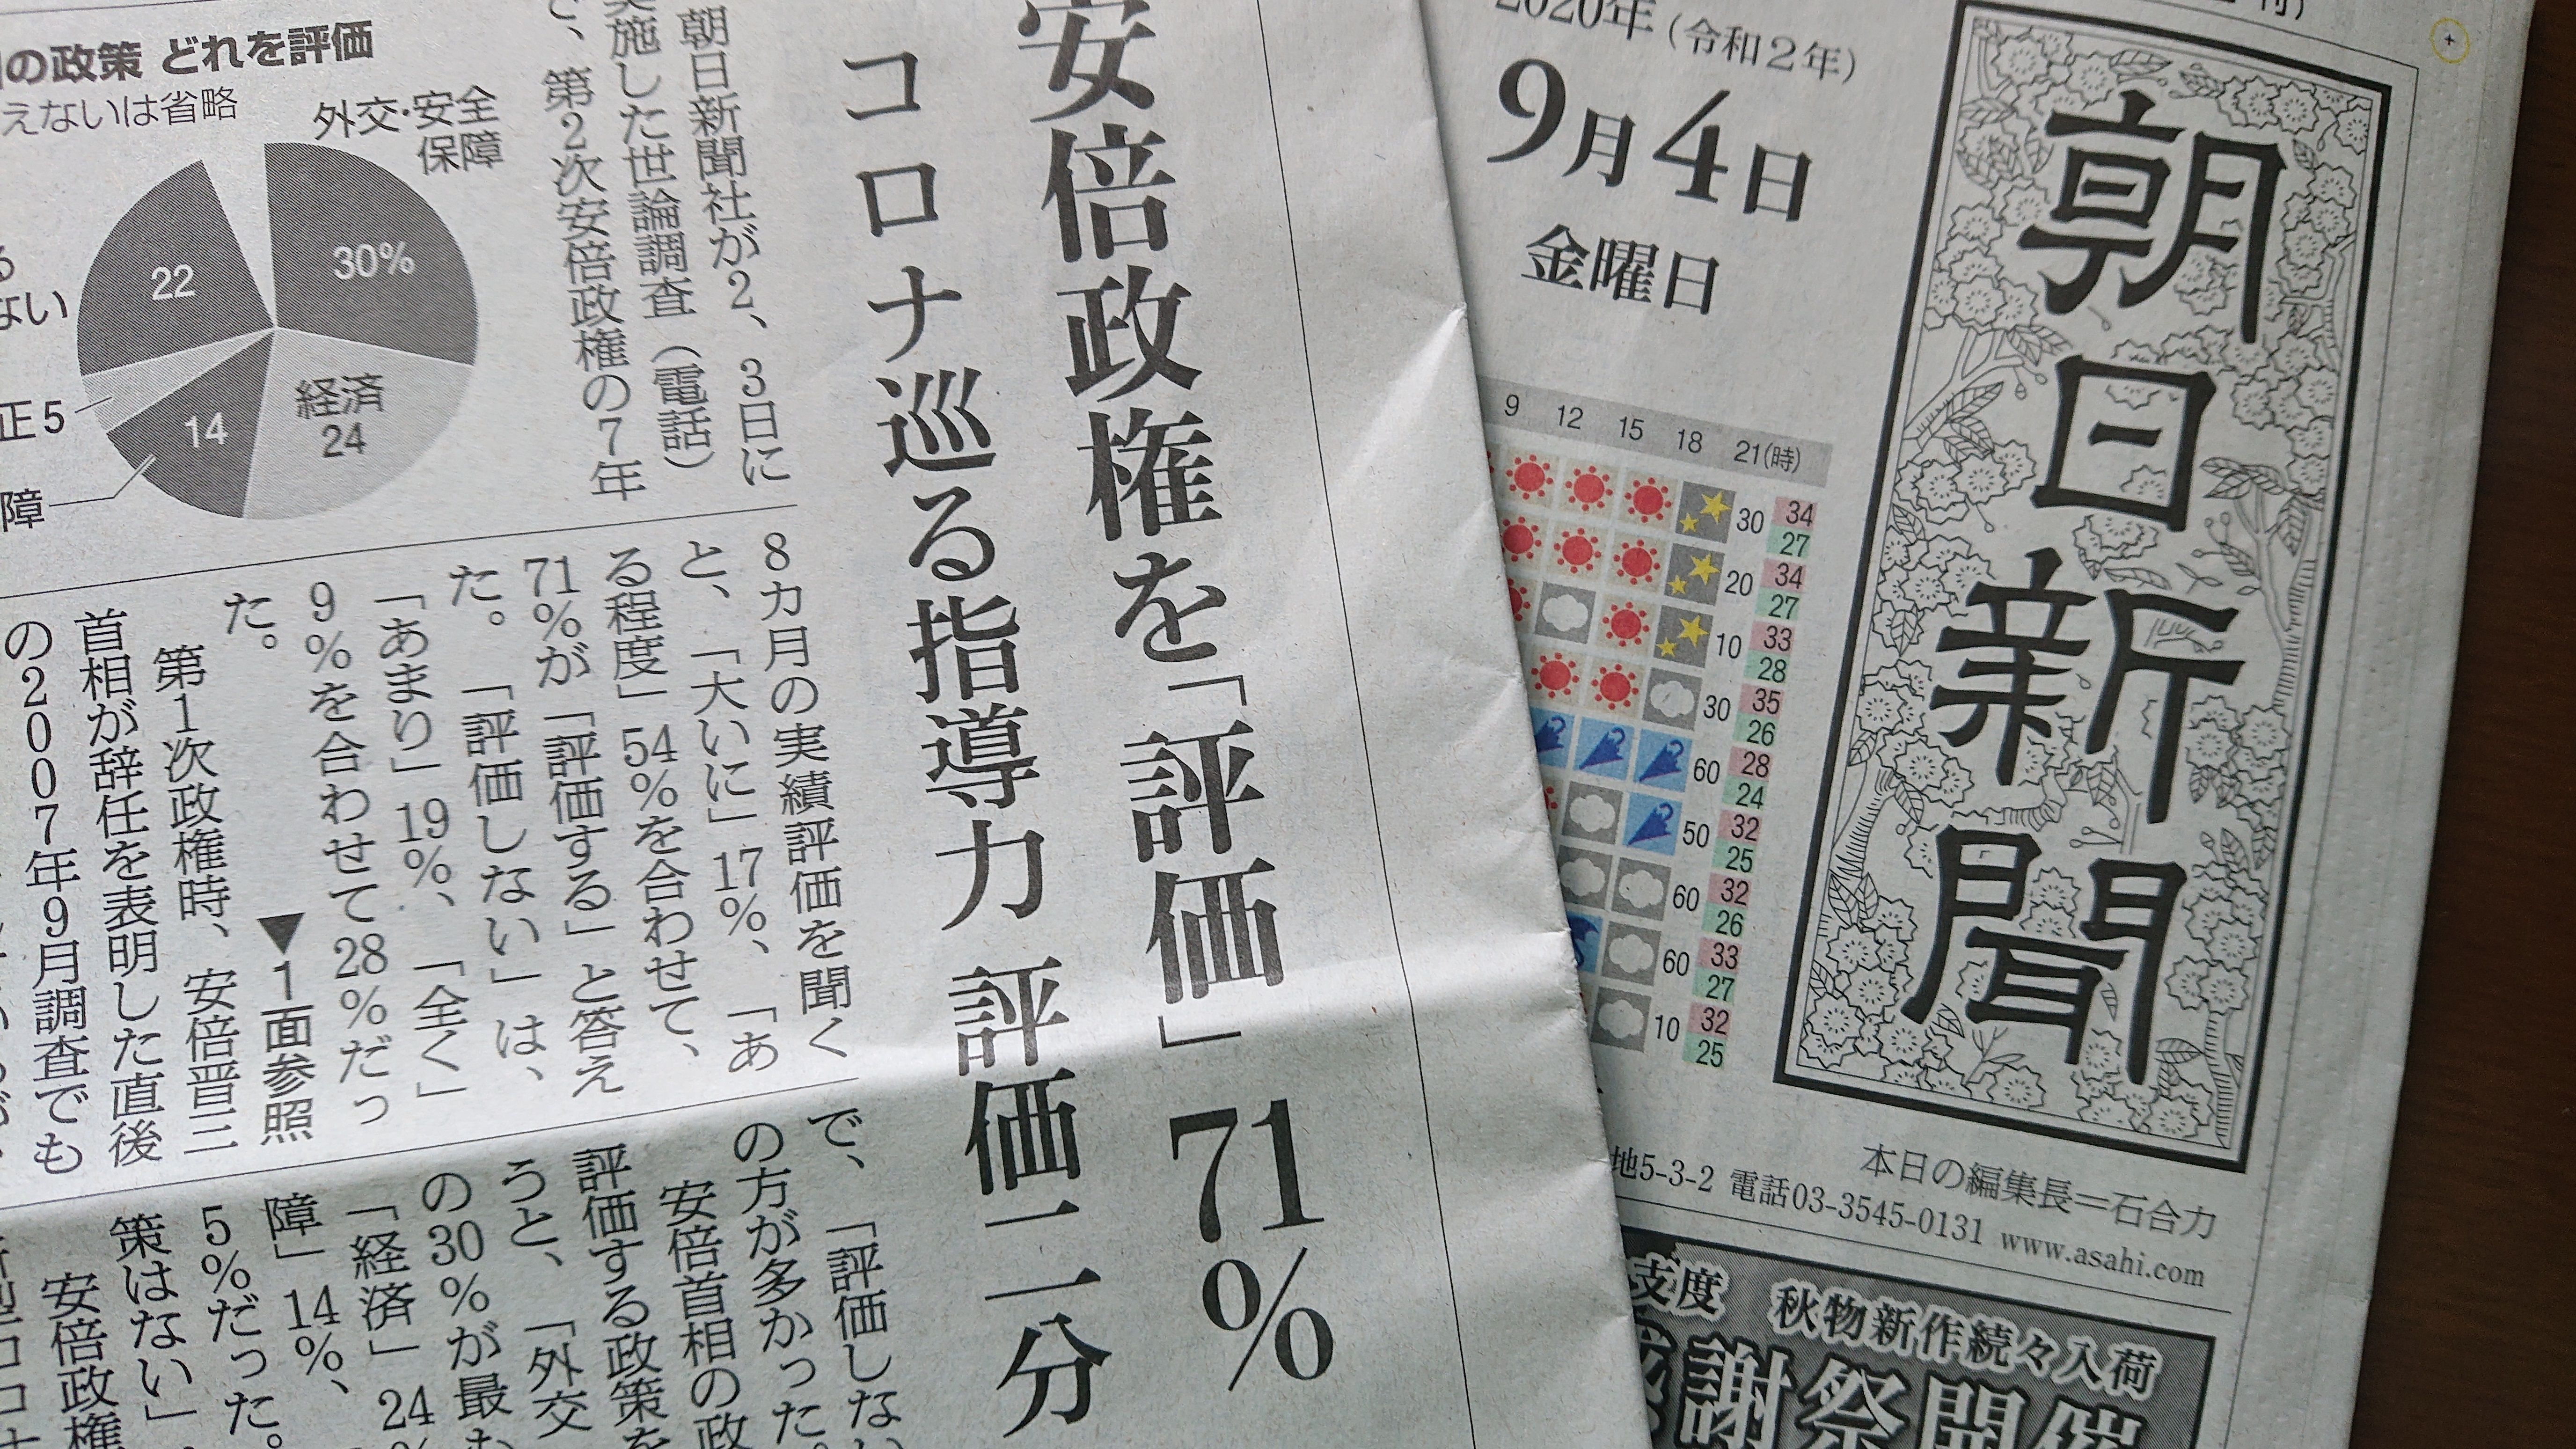 朝日新聞はなぜ世論から隔絶してしまったか？　社論と異なる世論調査結果、メディアは真剣に受け止めているか